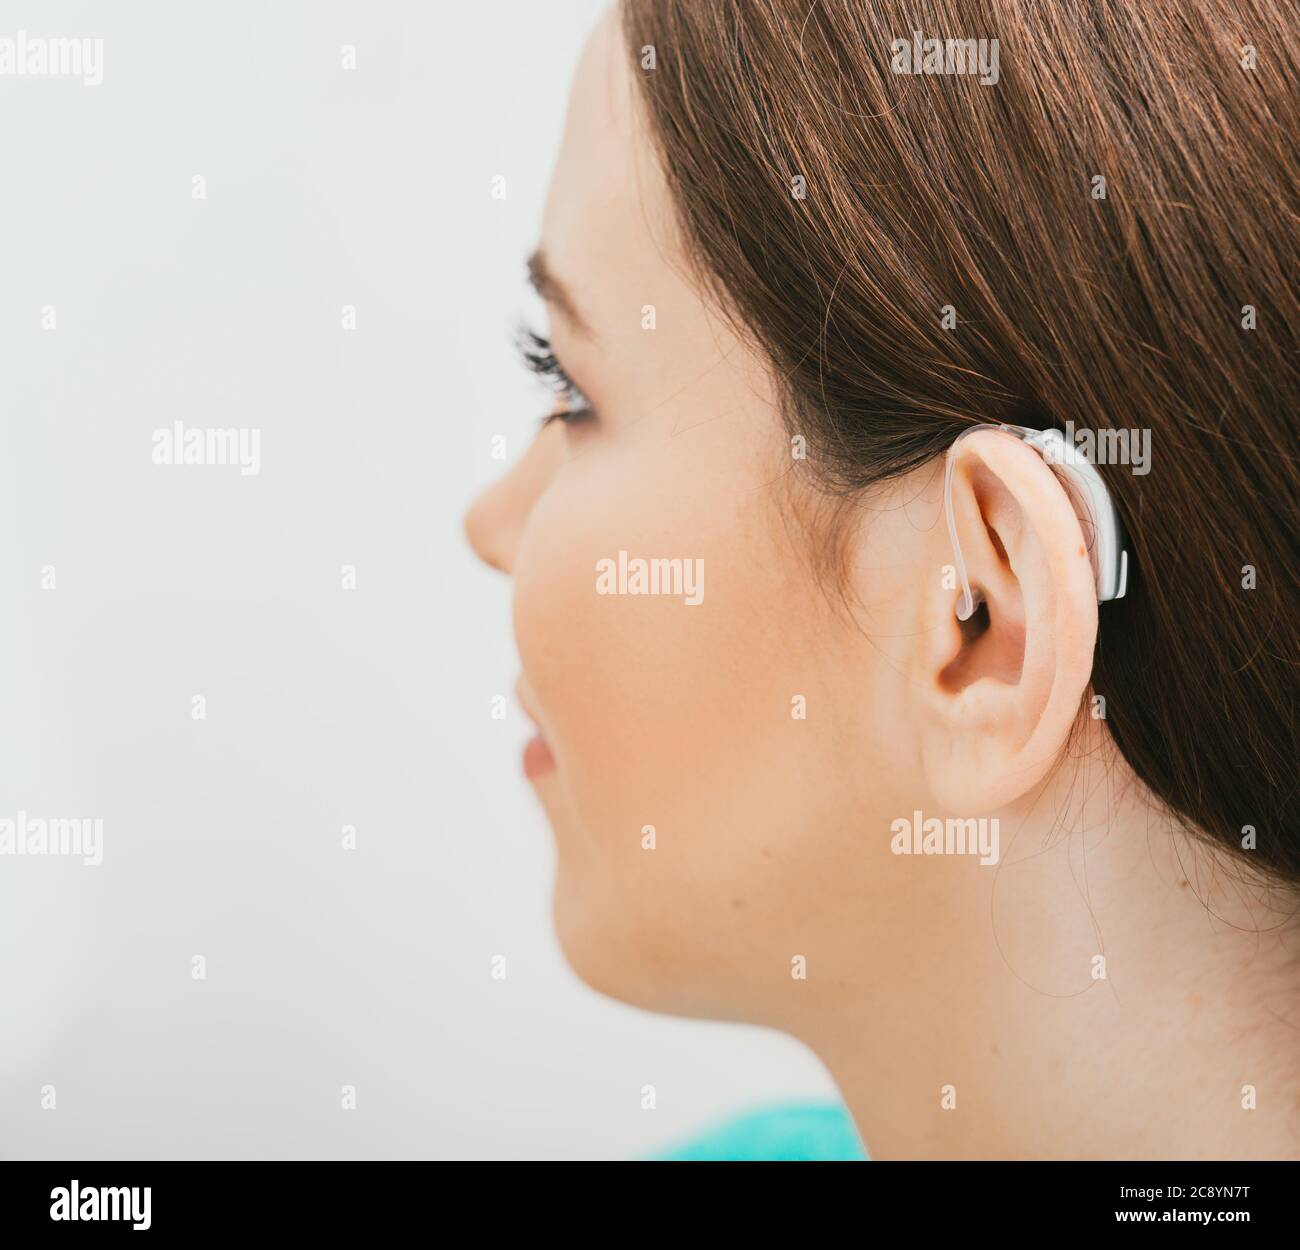 Prothèse auditive BTE sur l'oreille femelle. Traitement de la surdité, solution auditive Banque D'Images